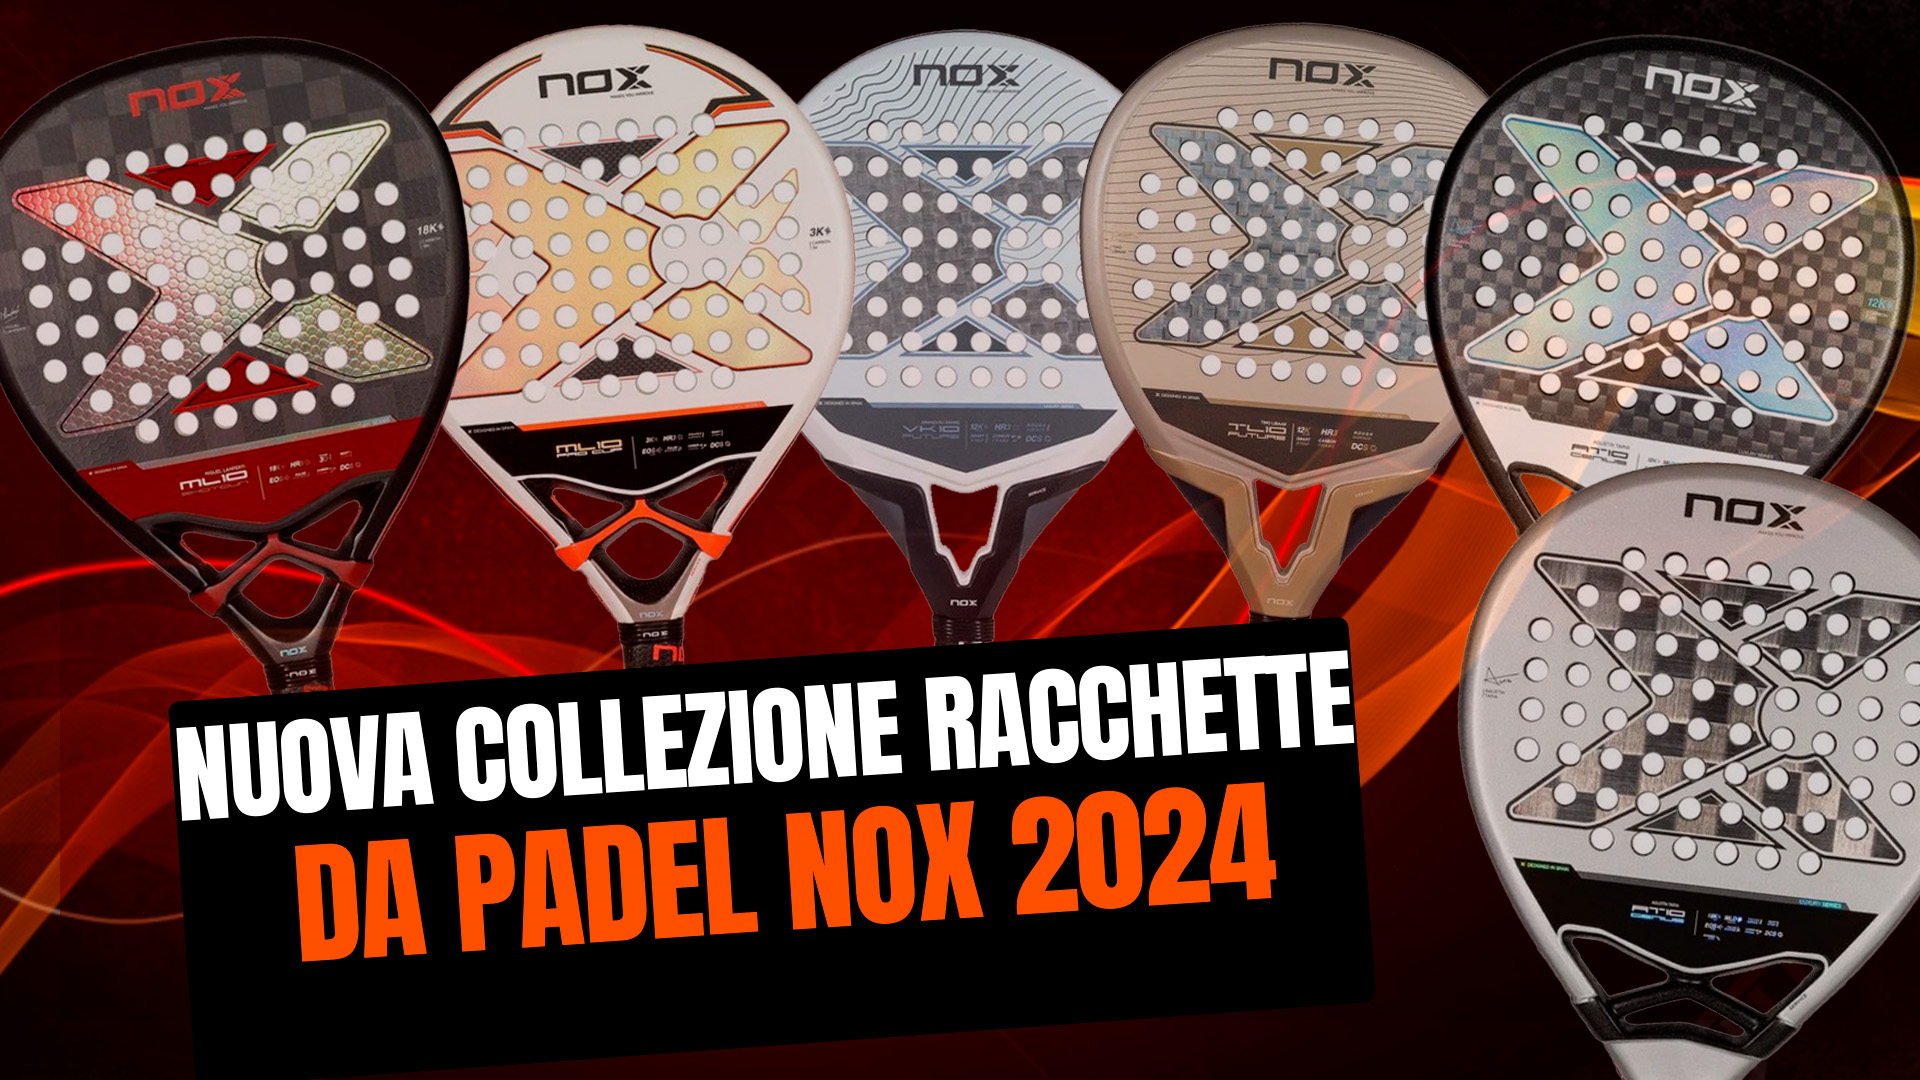 Nuova collezione di racchette da padel Nox 2024, rinnovata gamma AT10